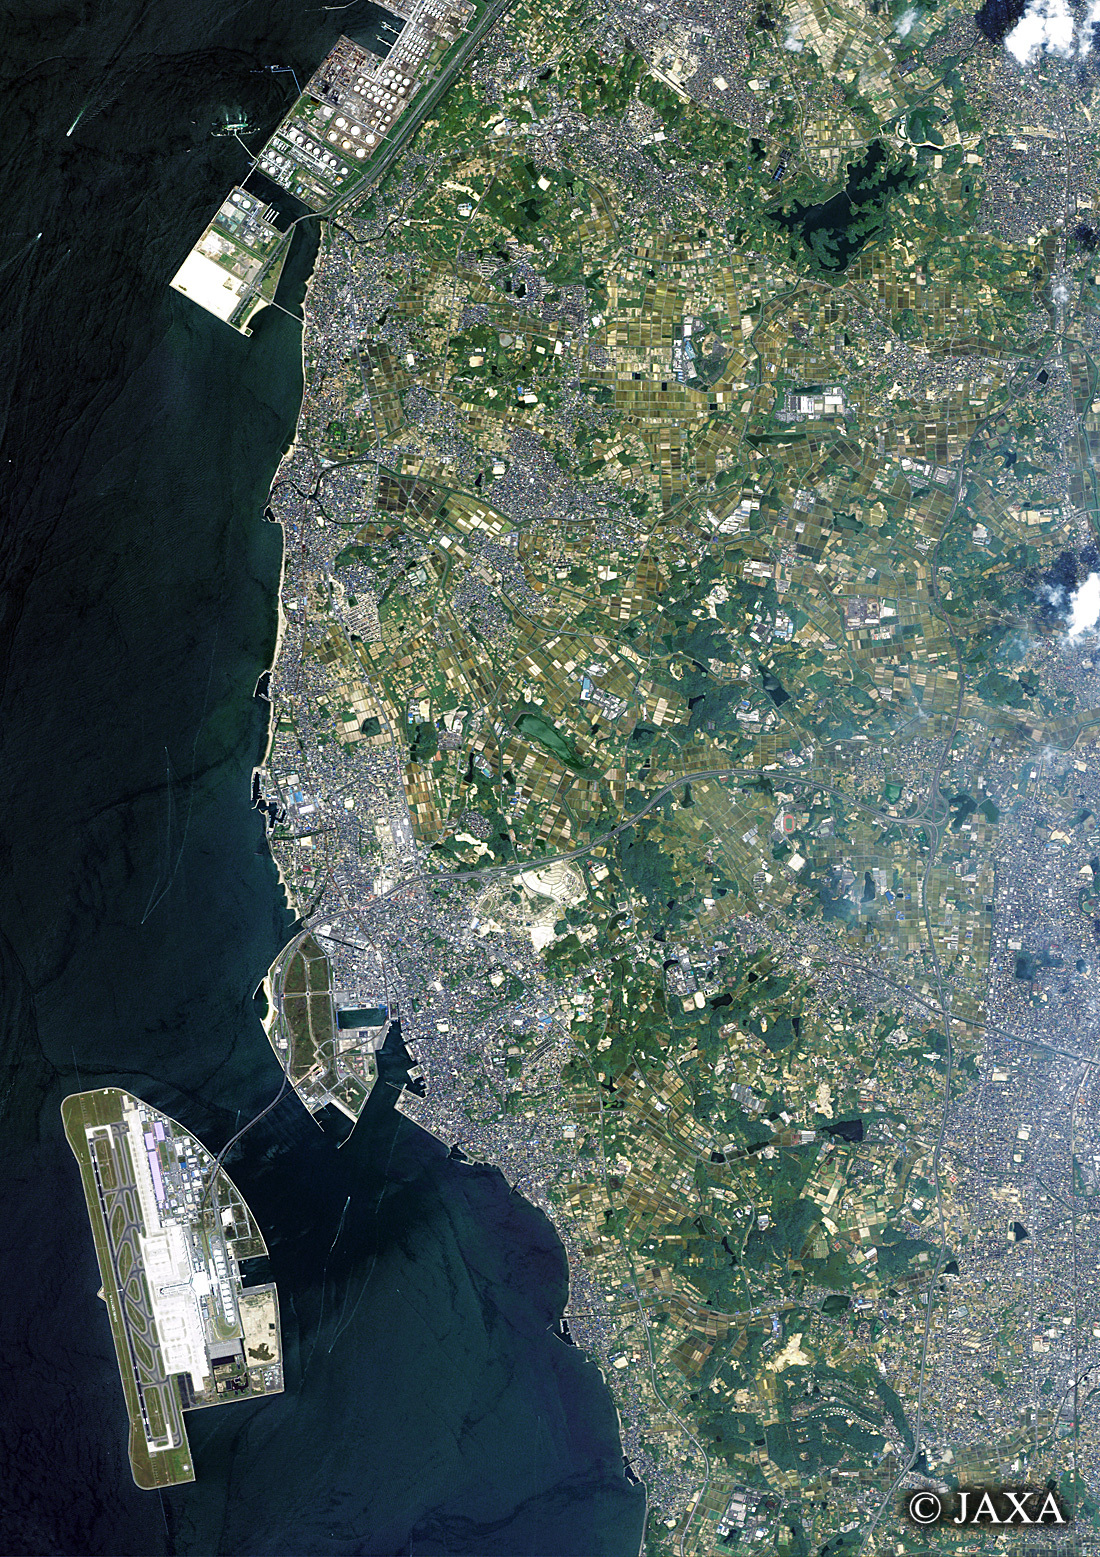 だいちから見た日本の都市 知多市、常滑市周辺:衛星画像